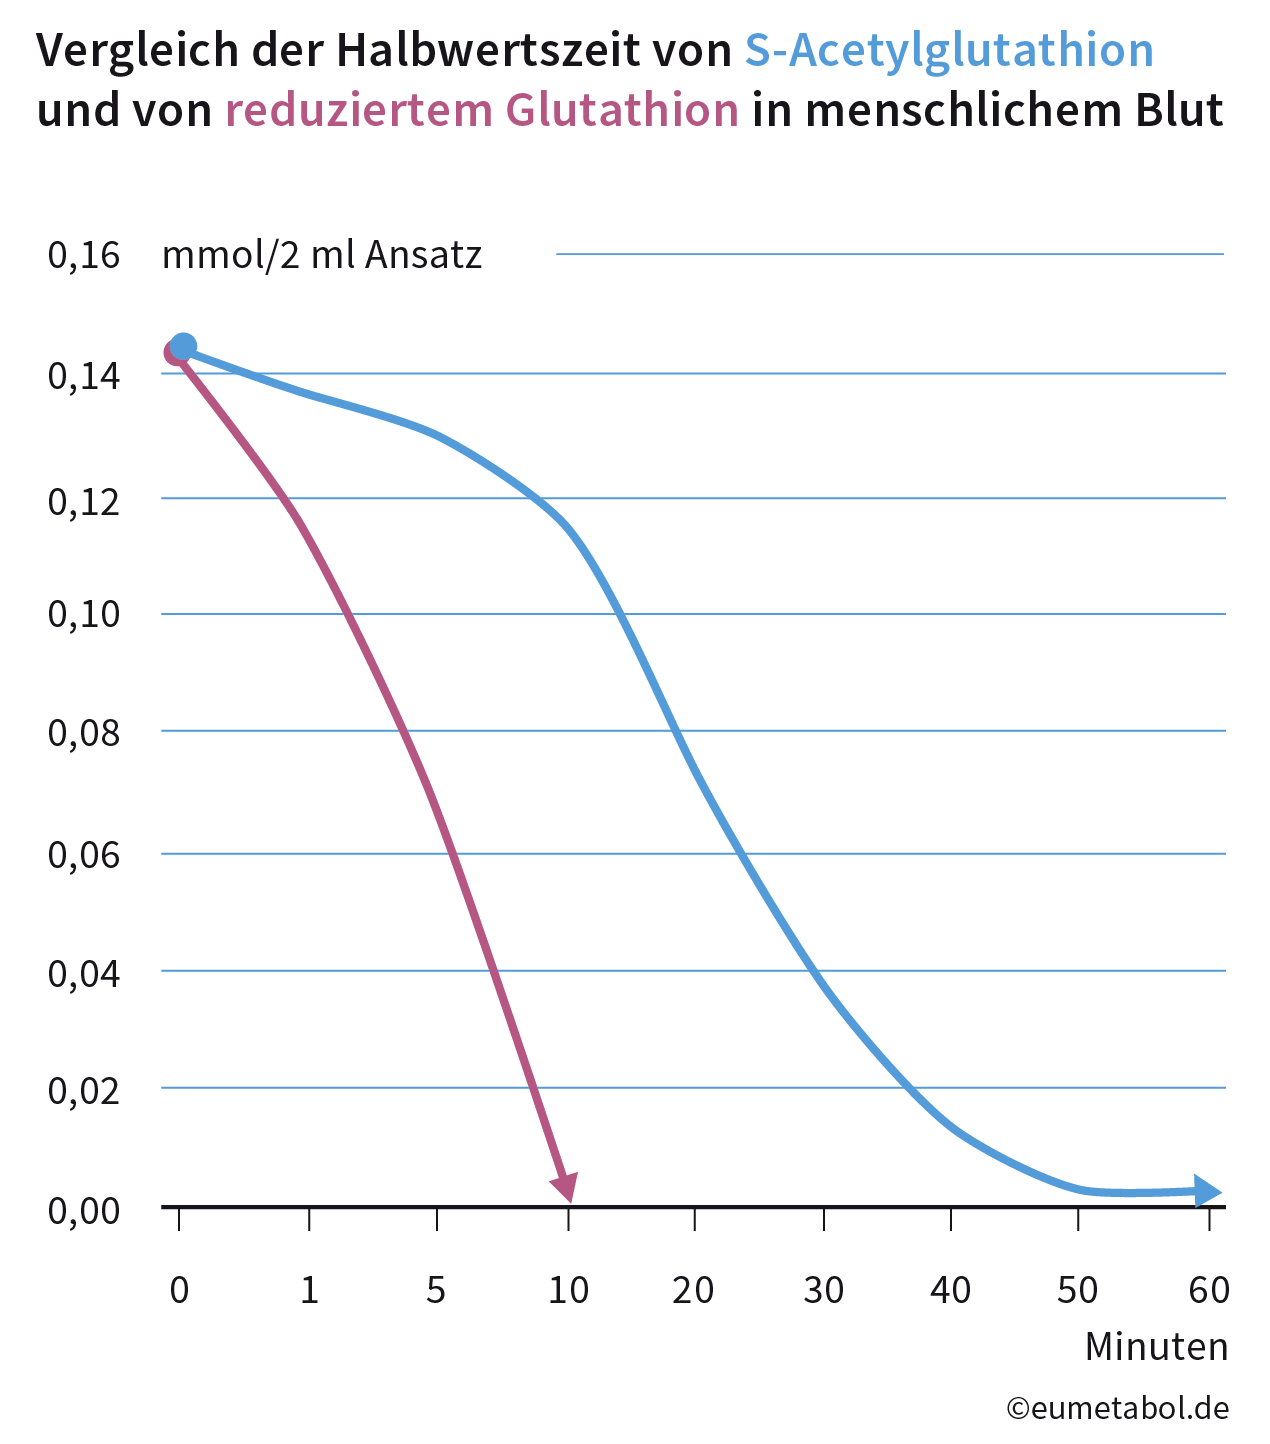 Vergleich der Halbwertszeit von Eumetabol und von reduziertem Glutathion